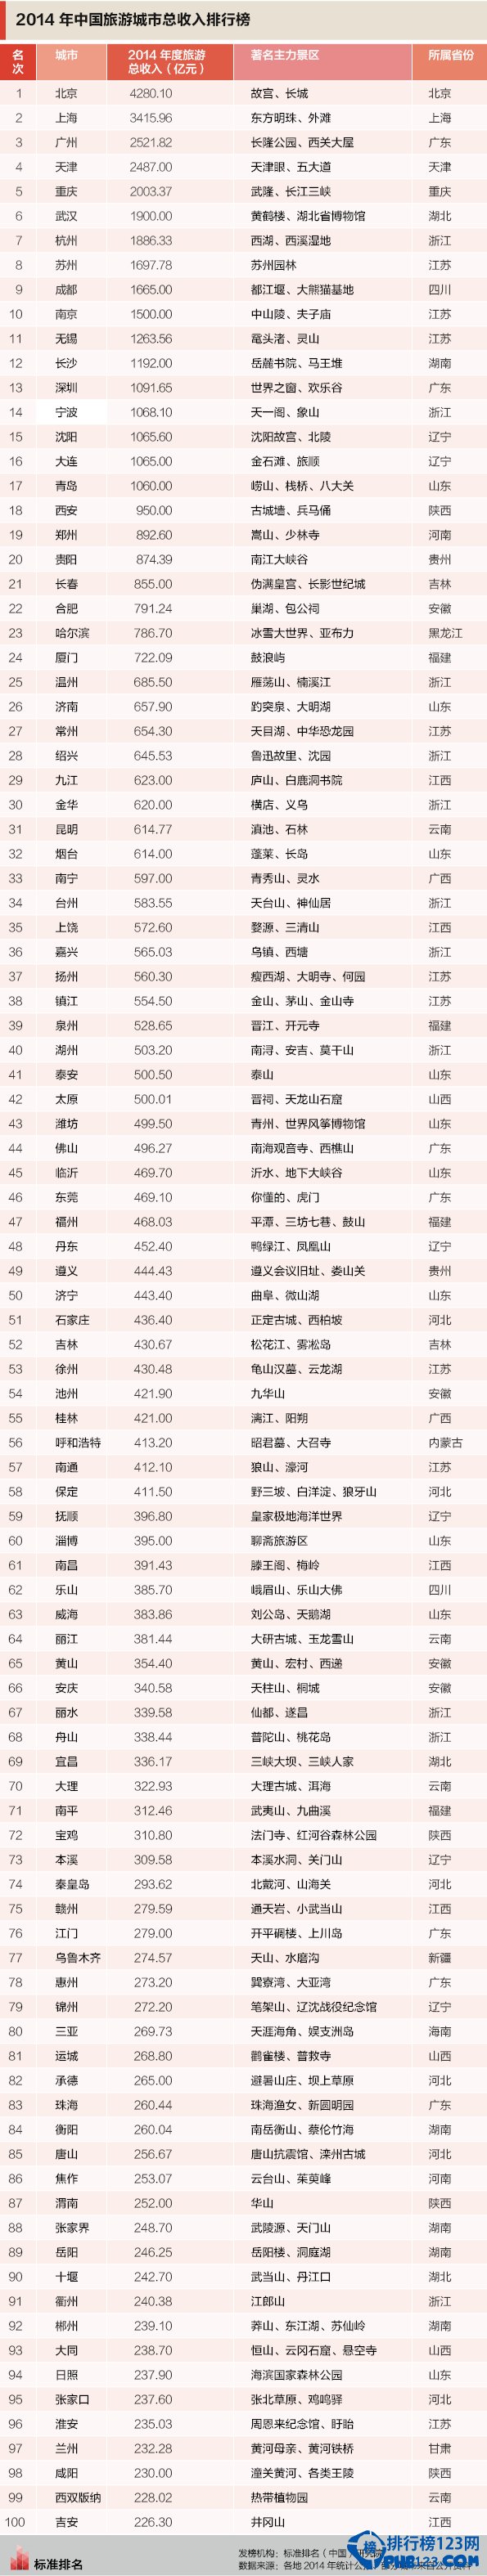 2015年中國旅遊城市總收入排行榜